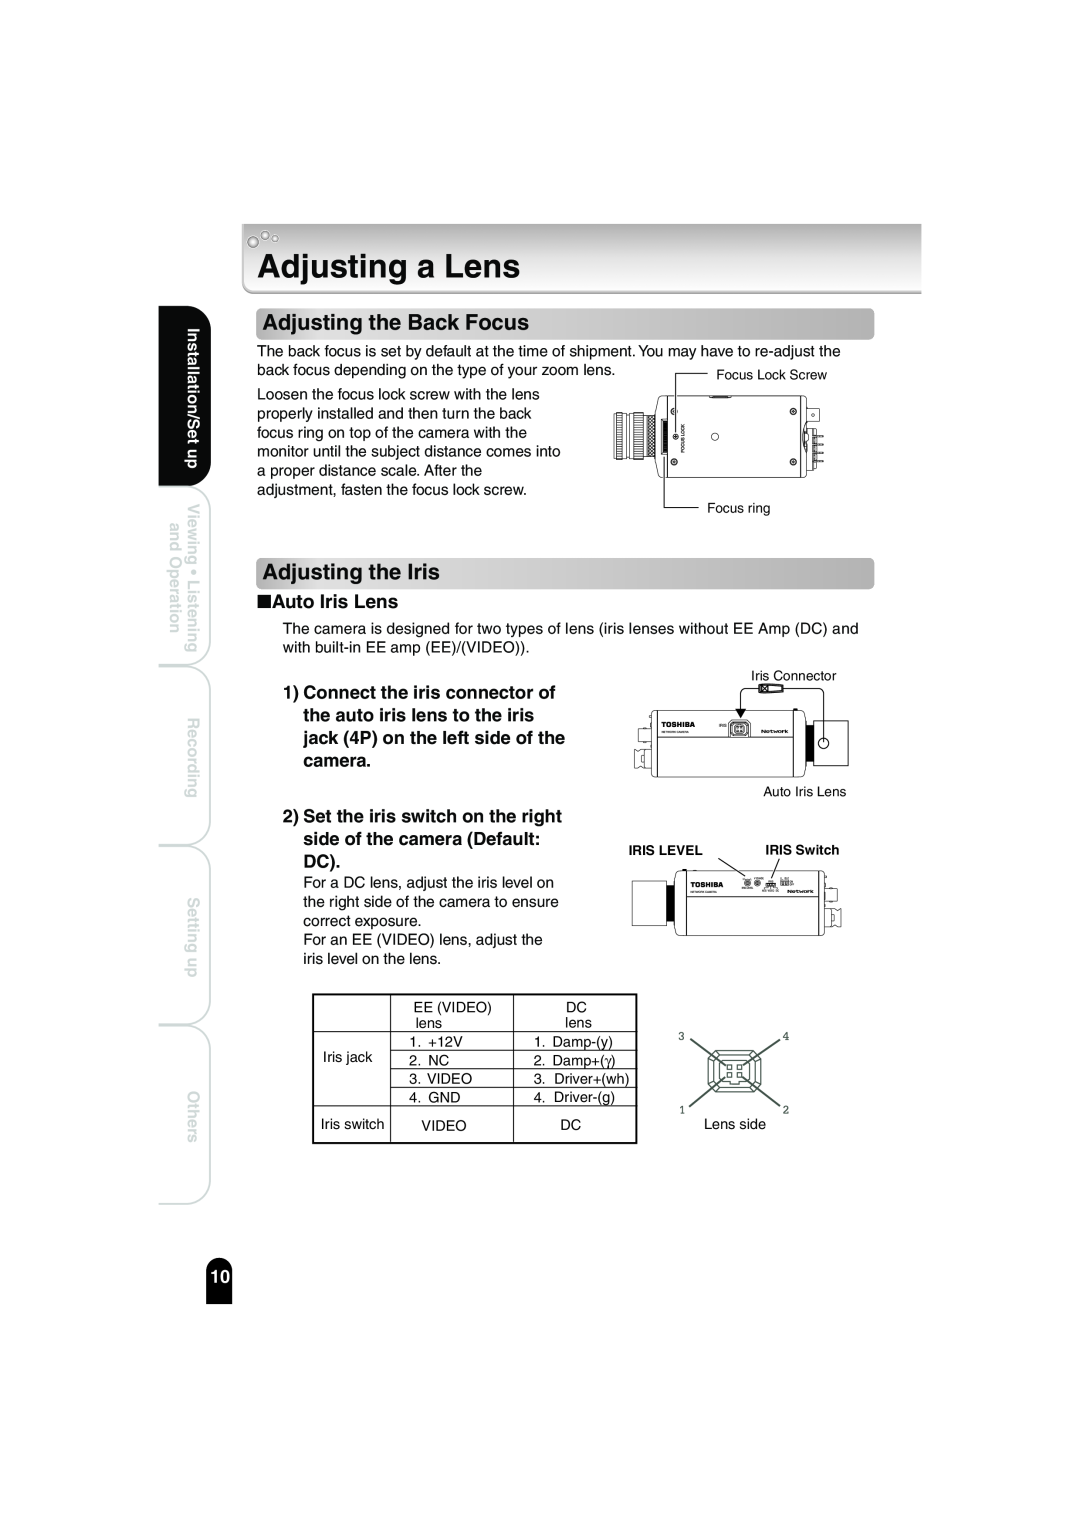 Toshiba IK-WB02A manual Adjusting a Lens, Adjusting the Back Focus, Adjusting the Iris, Auto Iris Lens, camera 